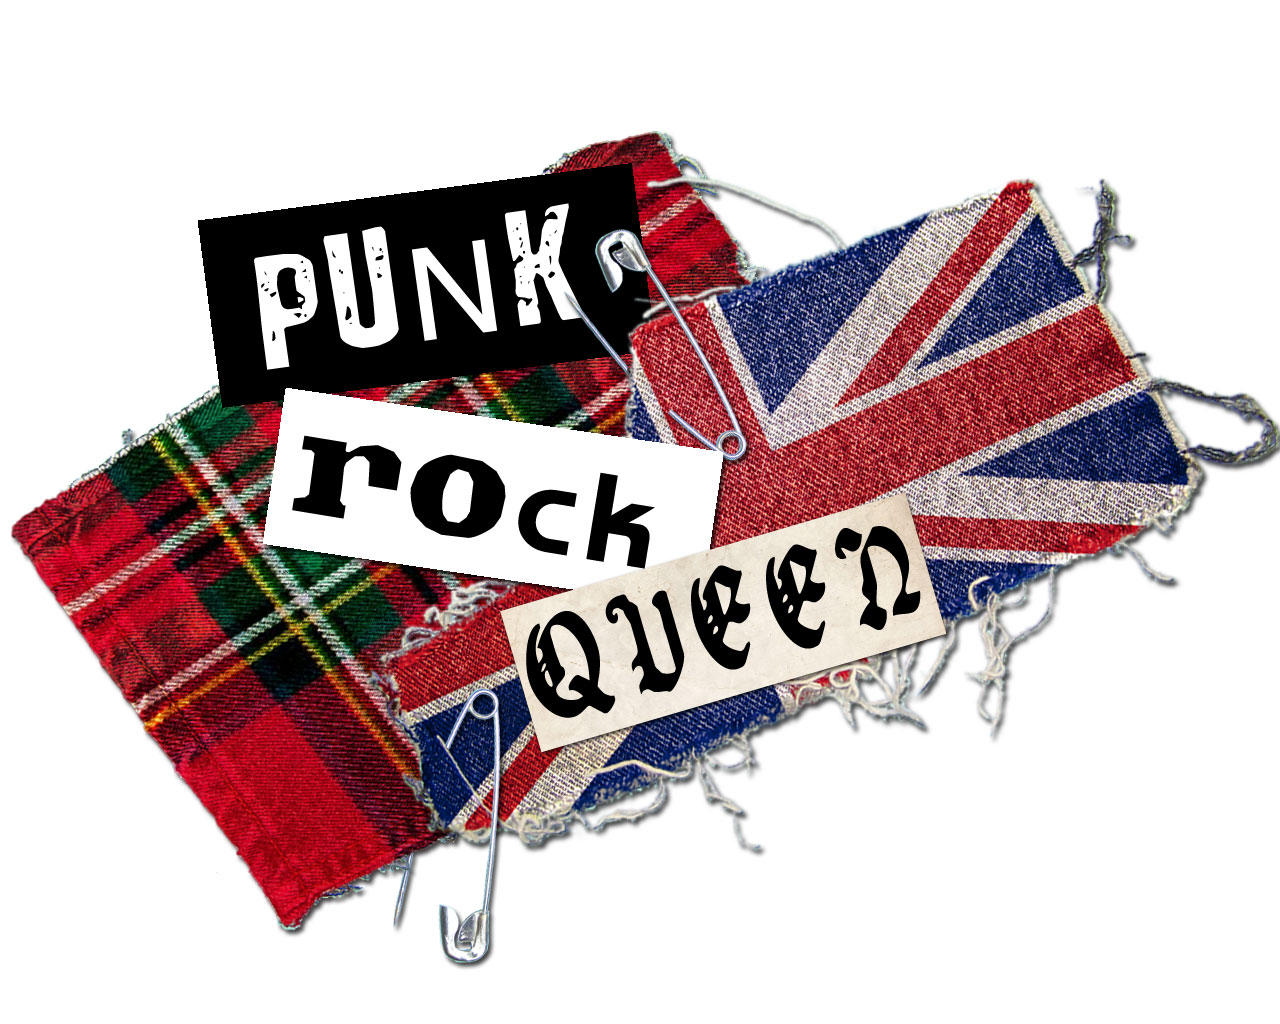 Punk Rock Queen by wuadziu on DeviantArt